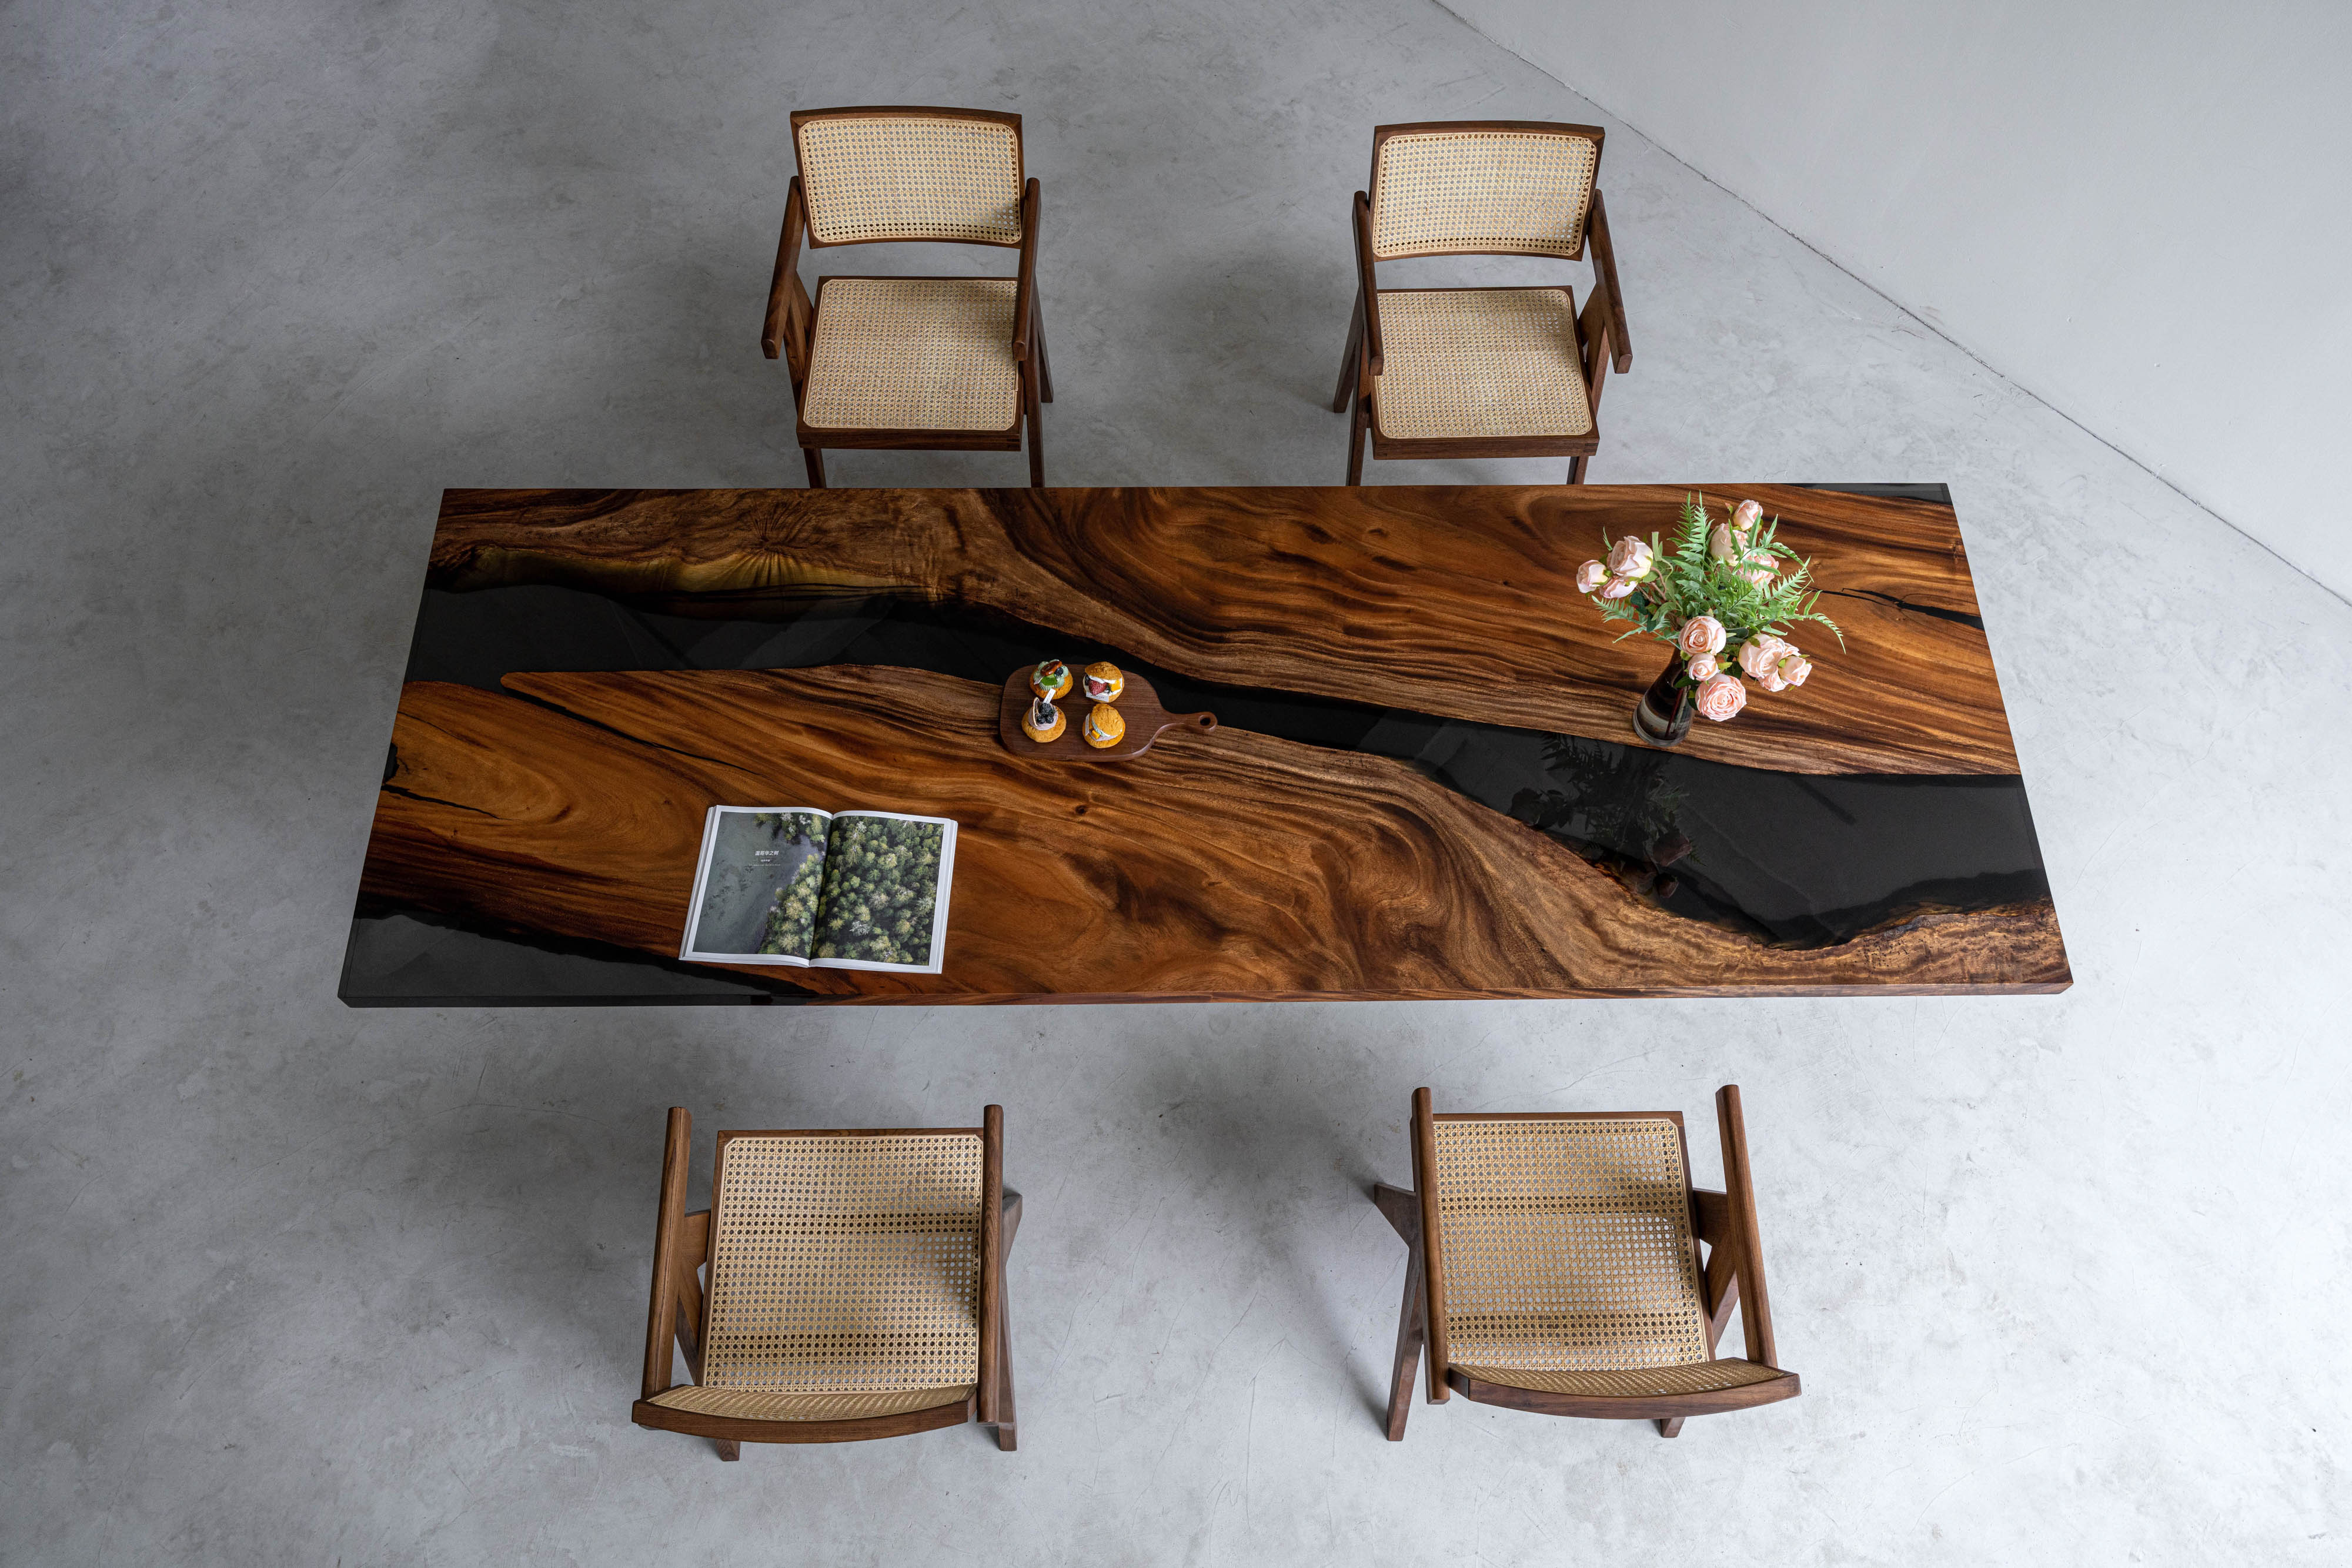 Sort valnøddefarve plettet i epoxyharpiksbord, brug sydamerikansk valnøddetræ